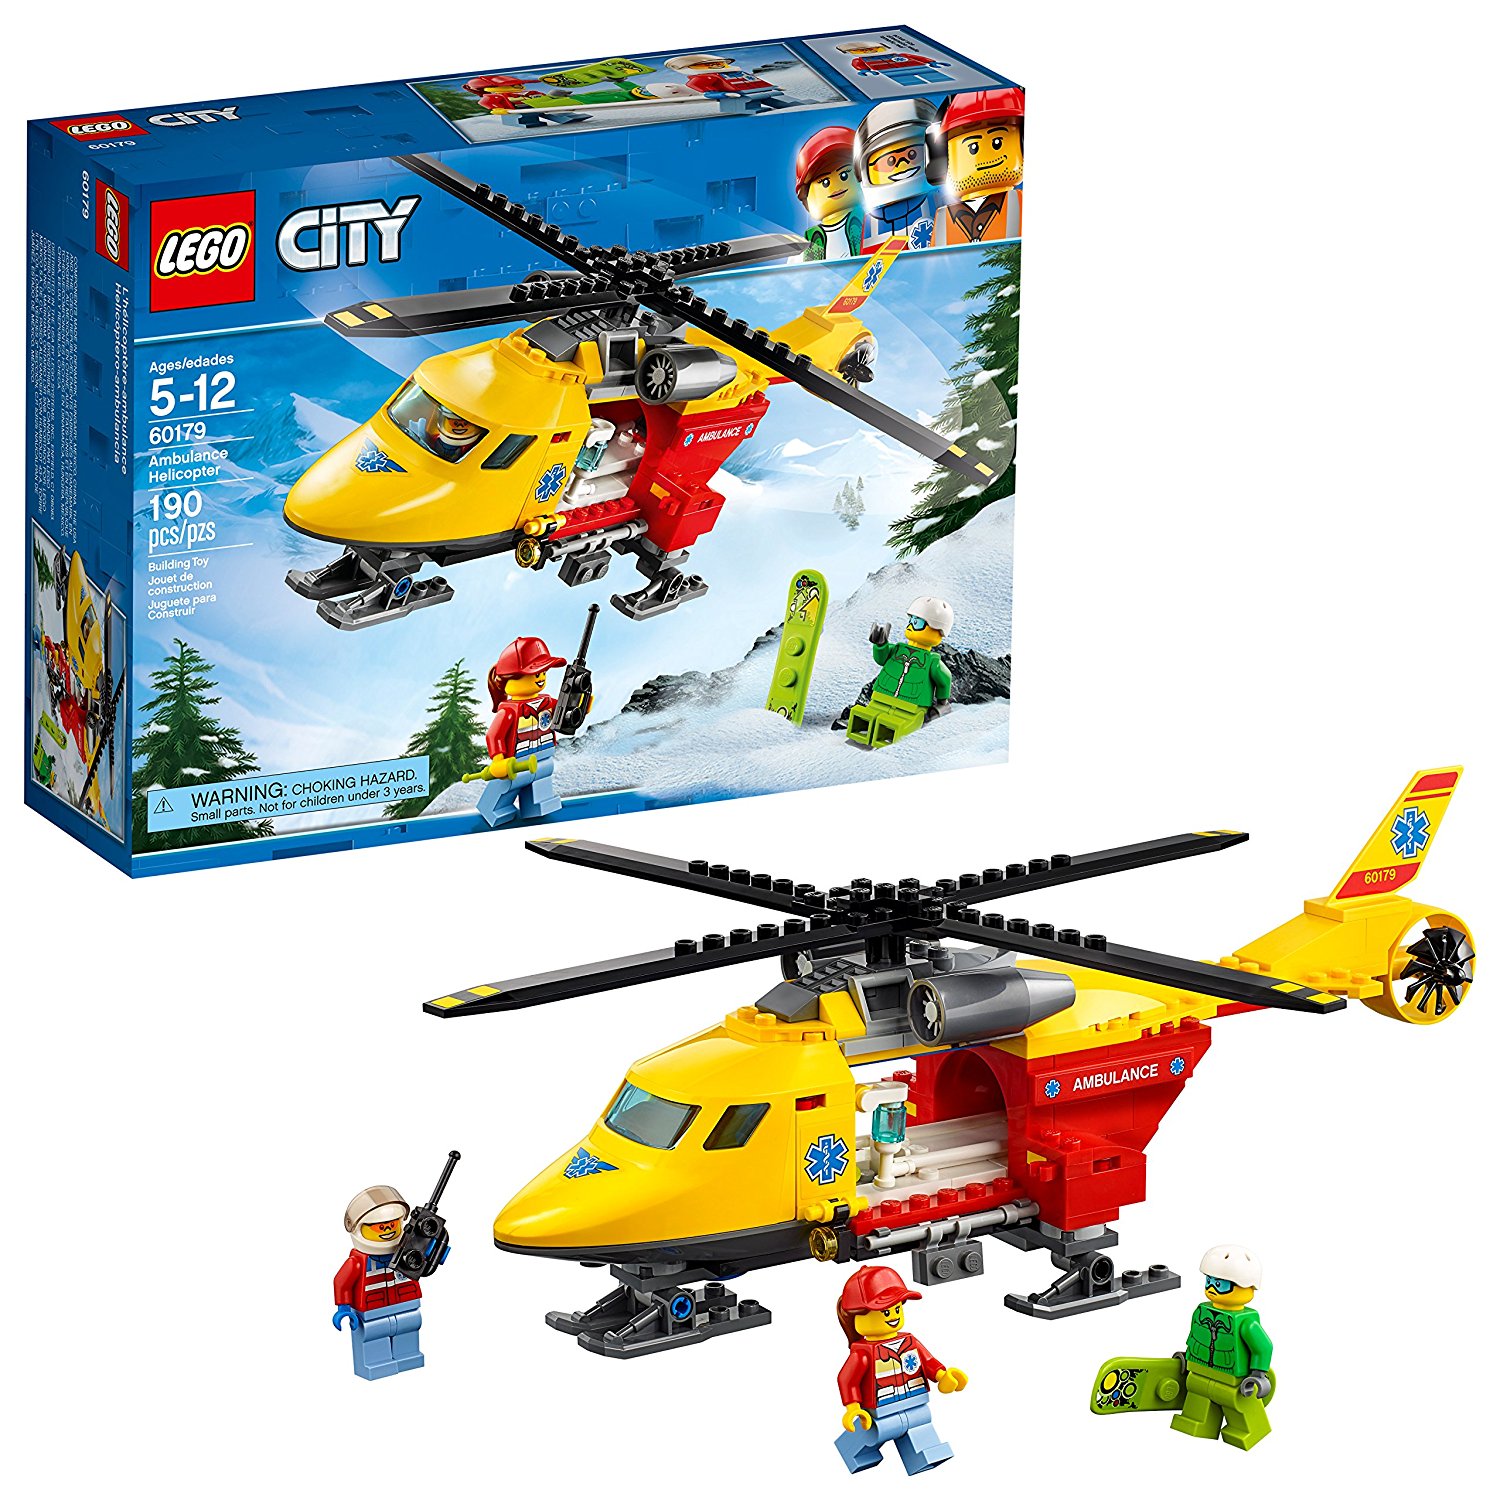 Lego city ambulance helicopter 60179 building kit